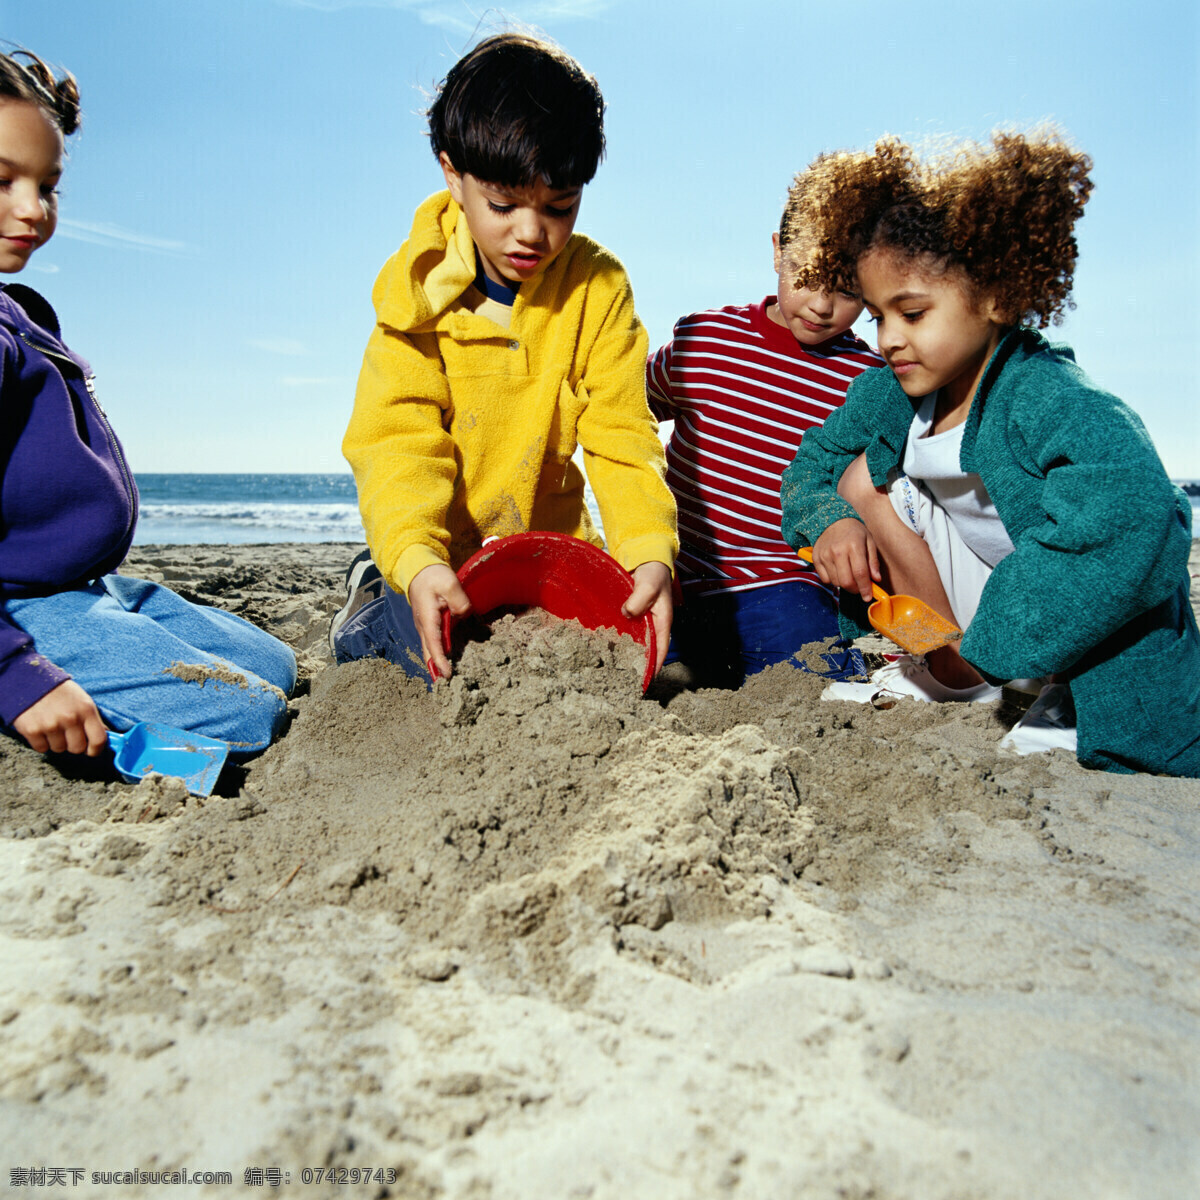 童年乐娶 小孩 沙滩 乐趣 3个小孩 玩沙子 自然景观 自然风景 摄影图库 300 人物图库 儿童幼儿